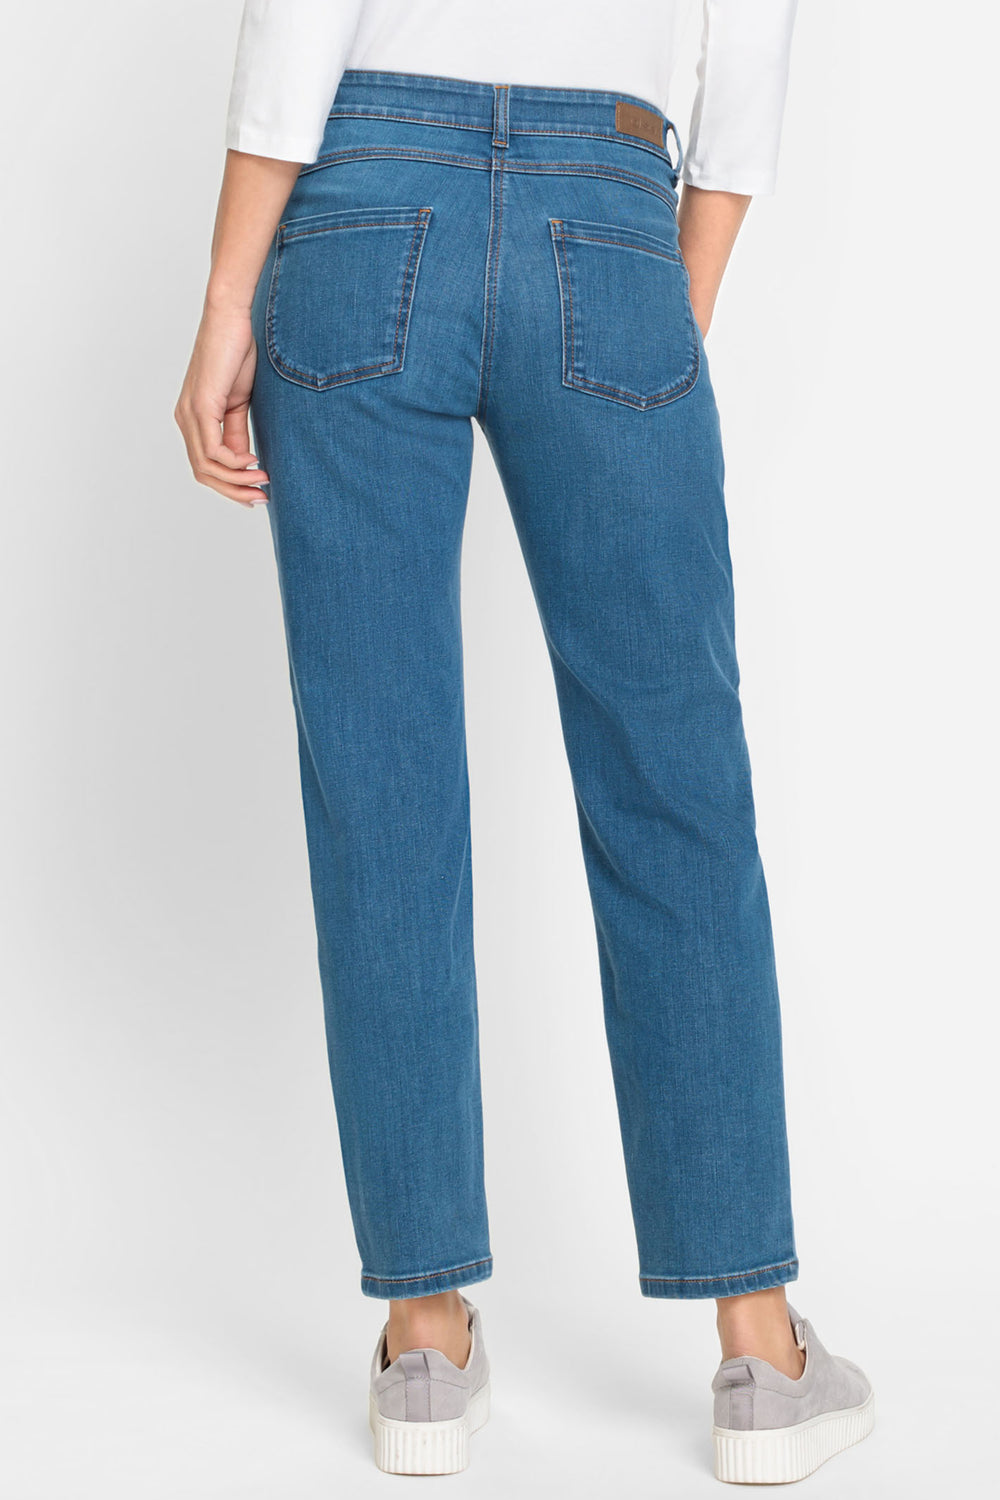 Olsen 14002170 Blue Denim Ankle Grazer Jeans - Experience Boutique